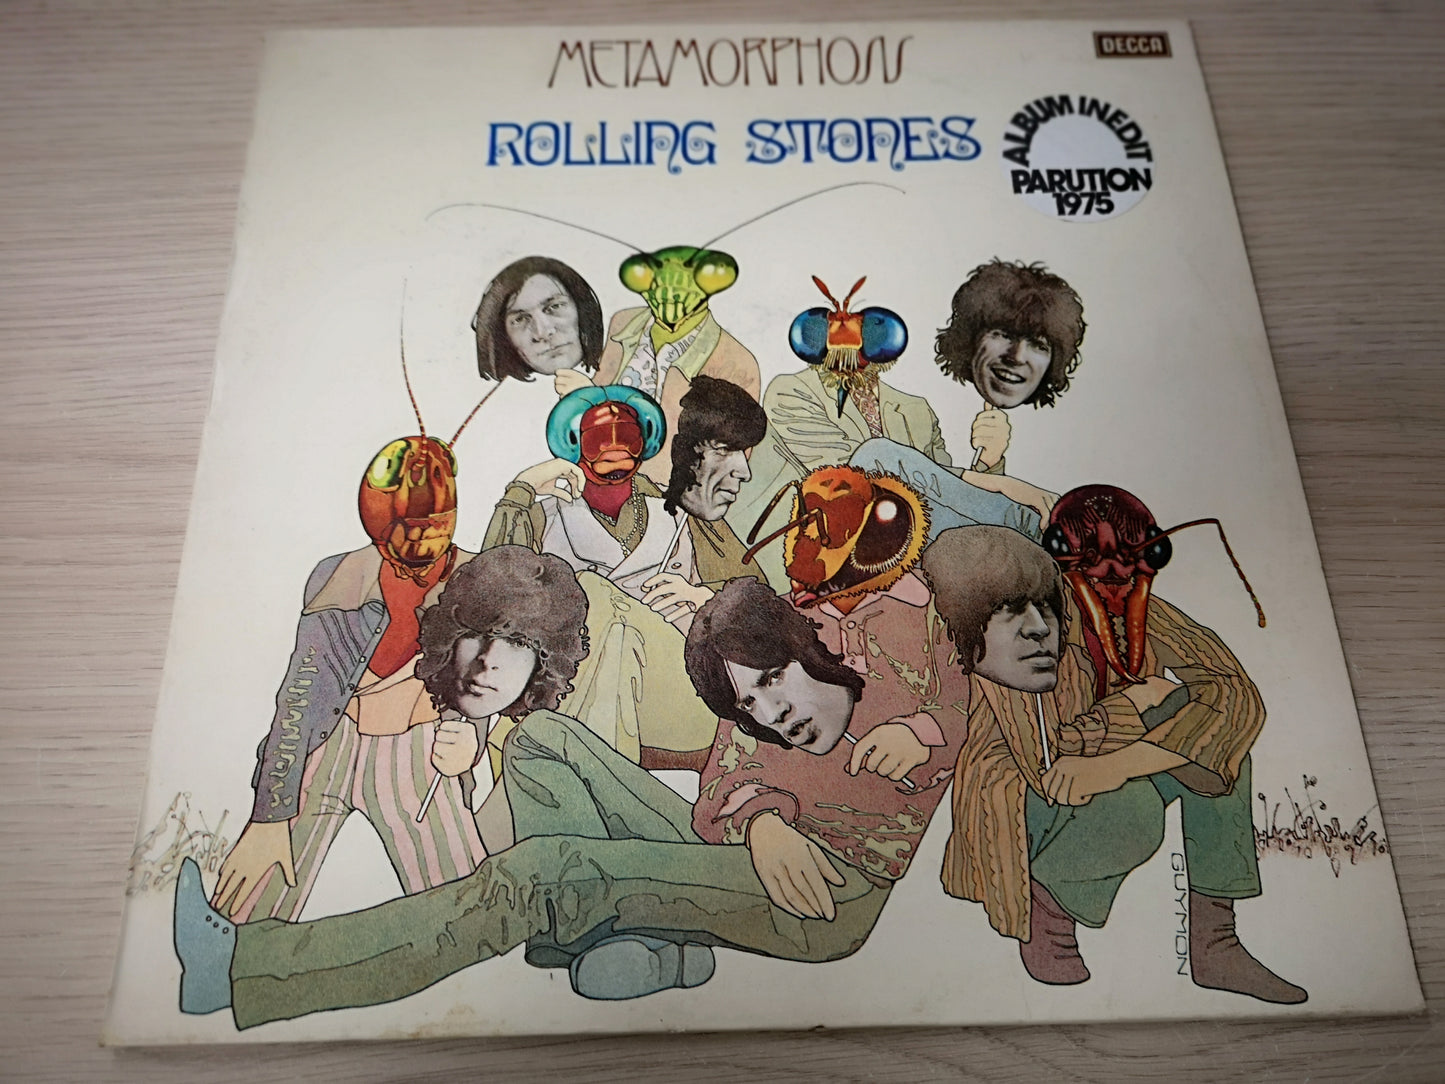 Rolling Stones "Metamorphosis" Orig France 1975 M-/M-